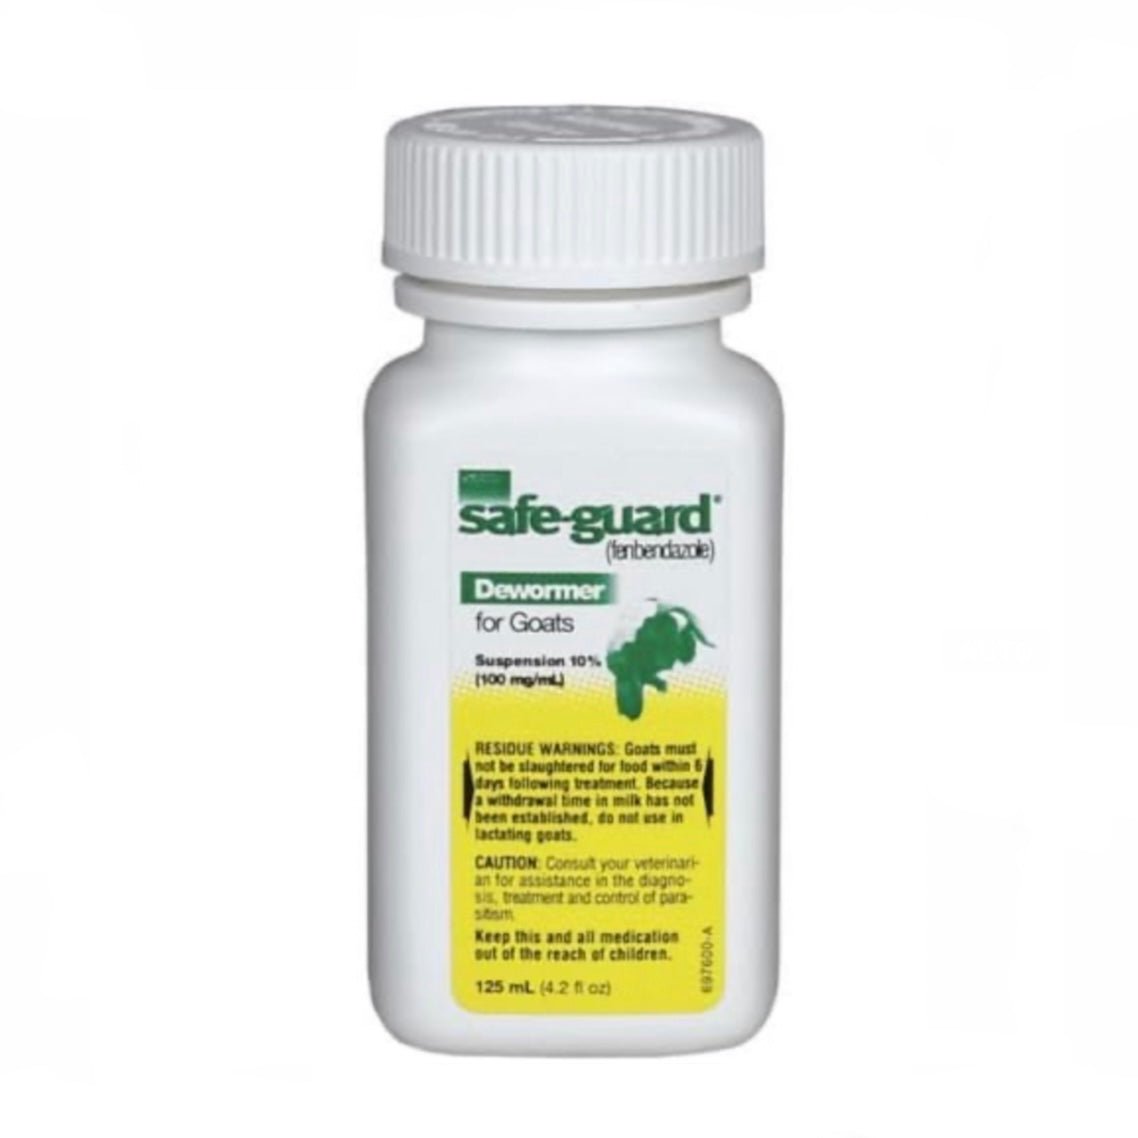 Safe-Guard (Fenbendazole) Liquid Dewormer, 125 ml - The First Aid Gear Shop